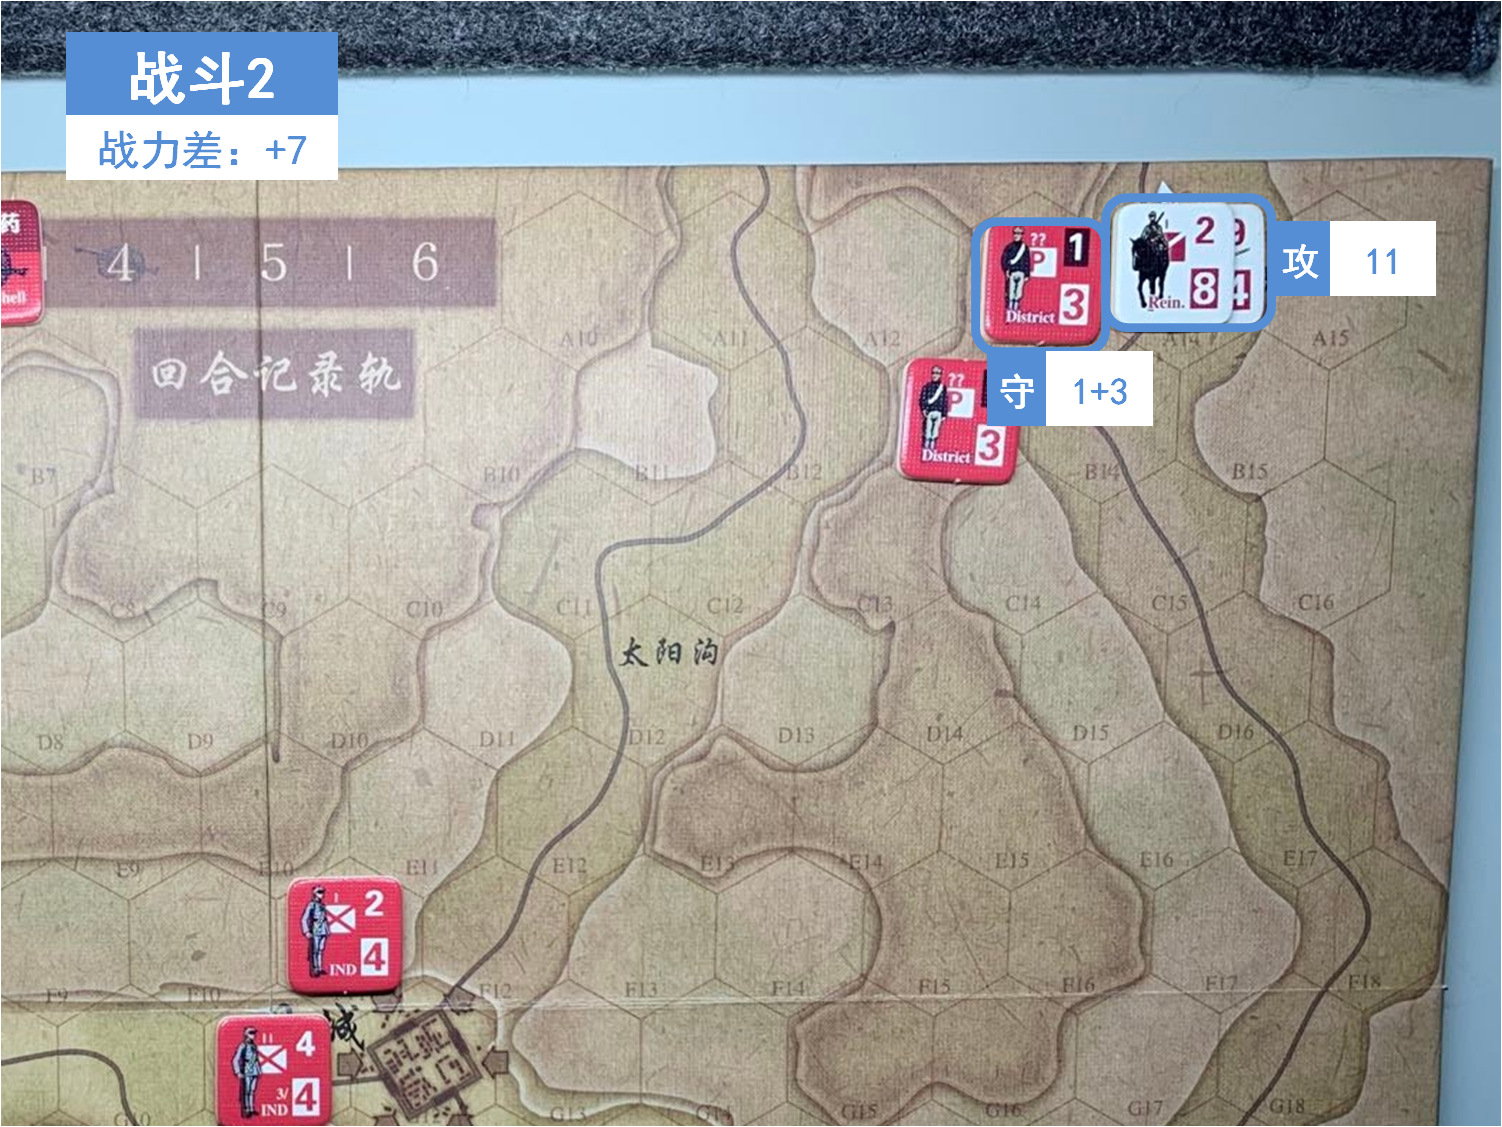 第一回合 日方戰鬥階段 戰鬥2 戰鬥力差值